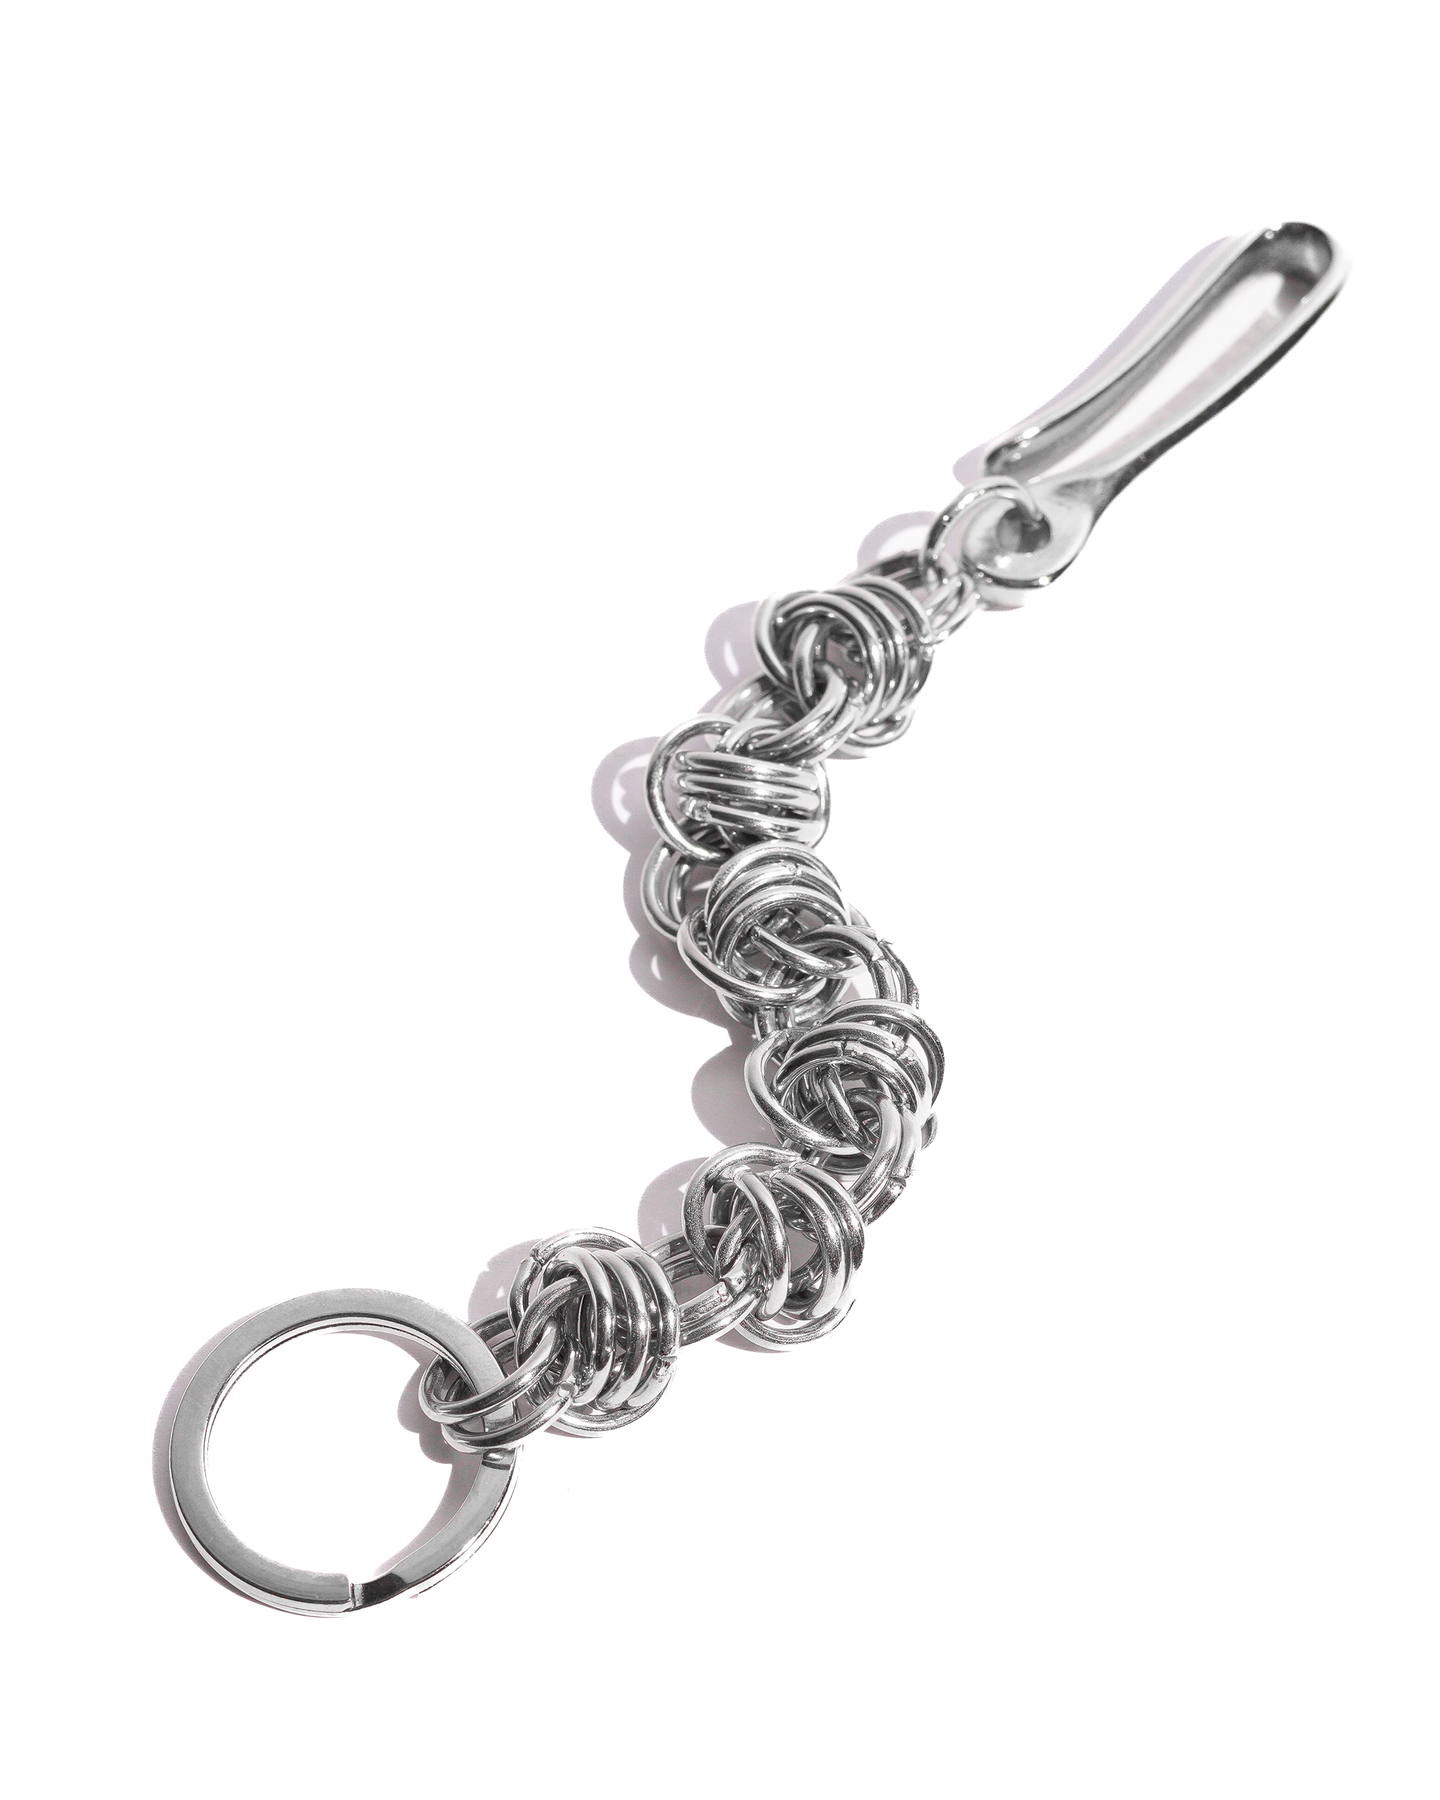 Steel Key Chain